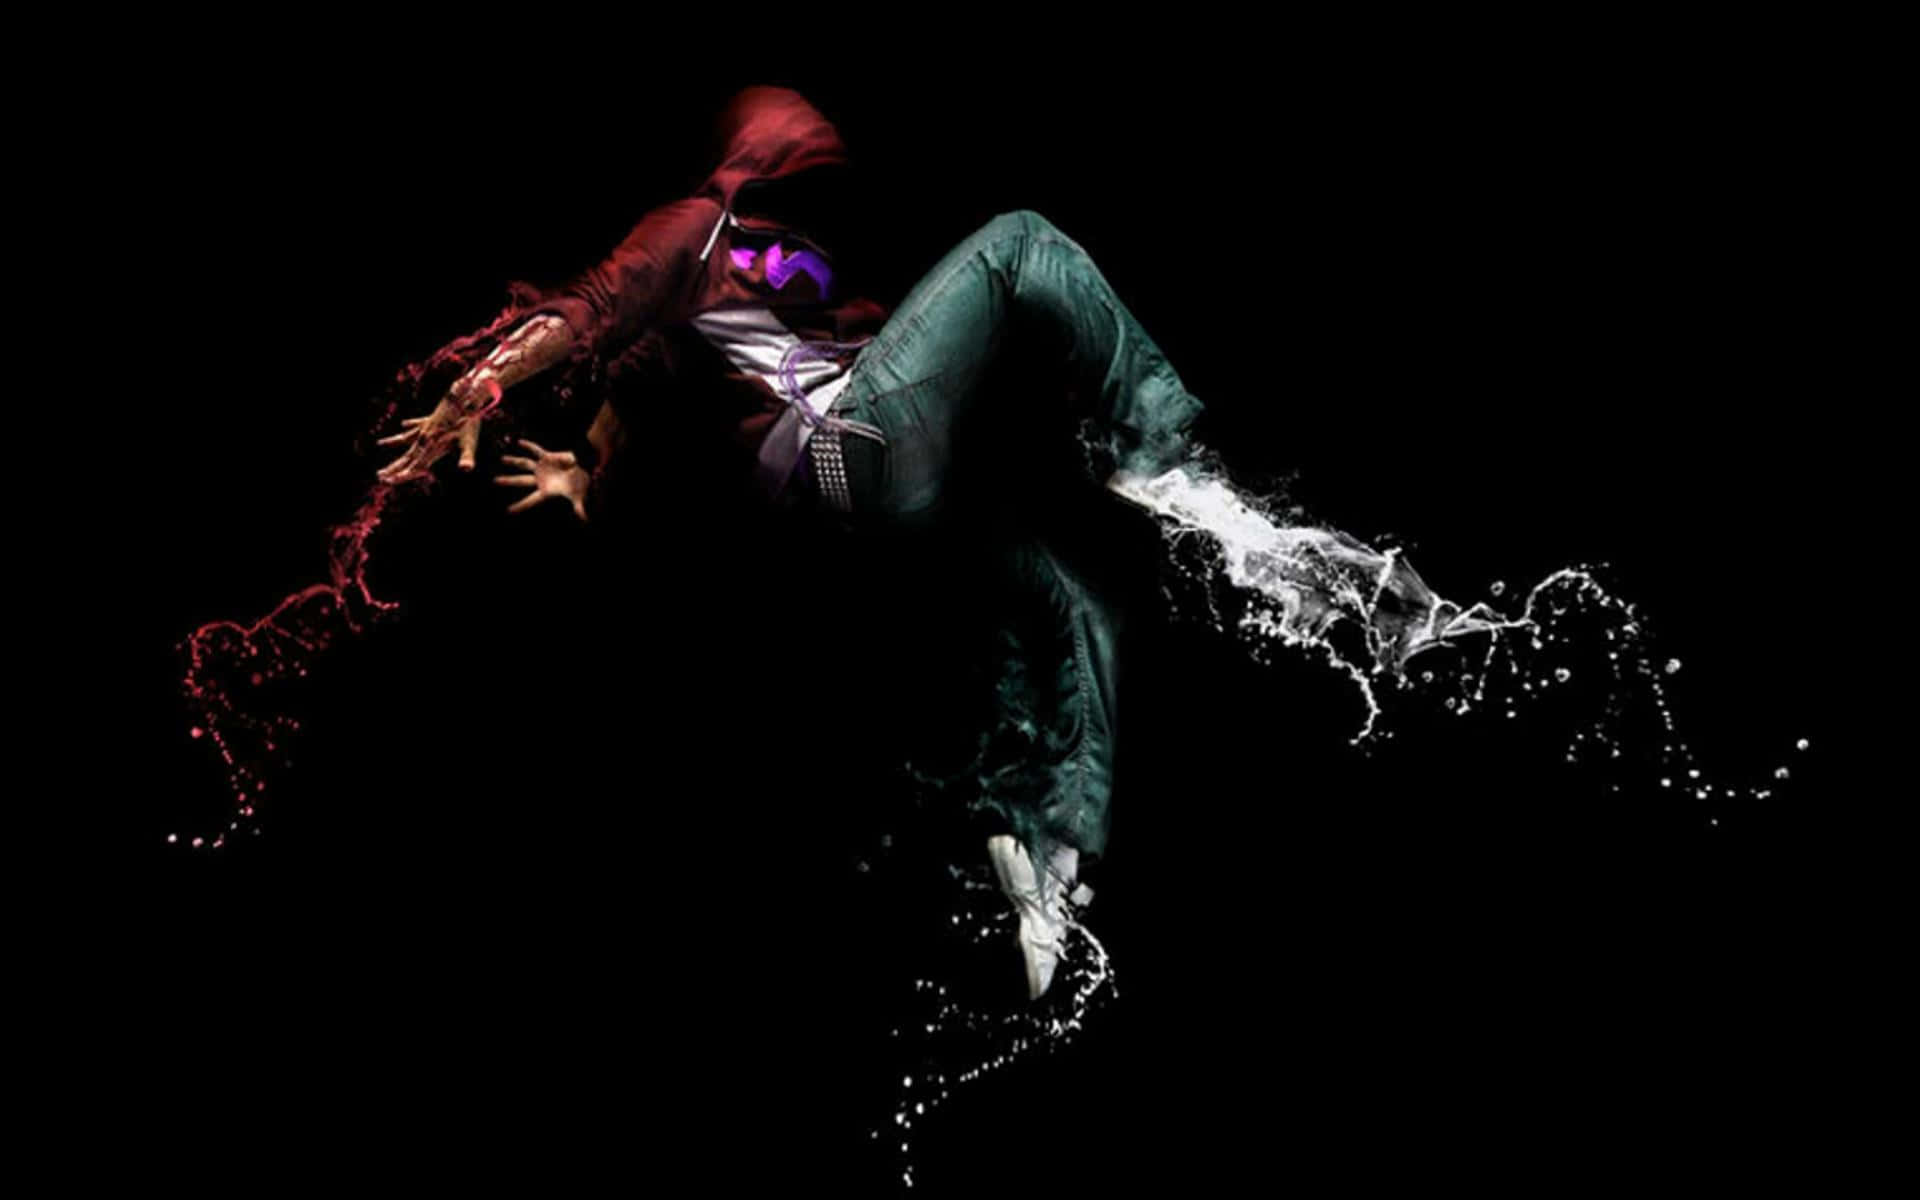 Sjov Fyr Breakdance Digital Illustration. Wallpaper